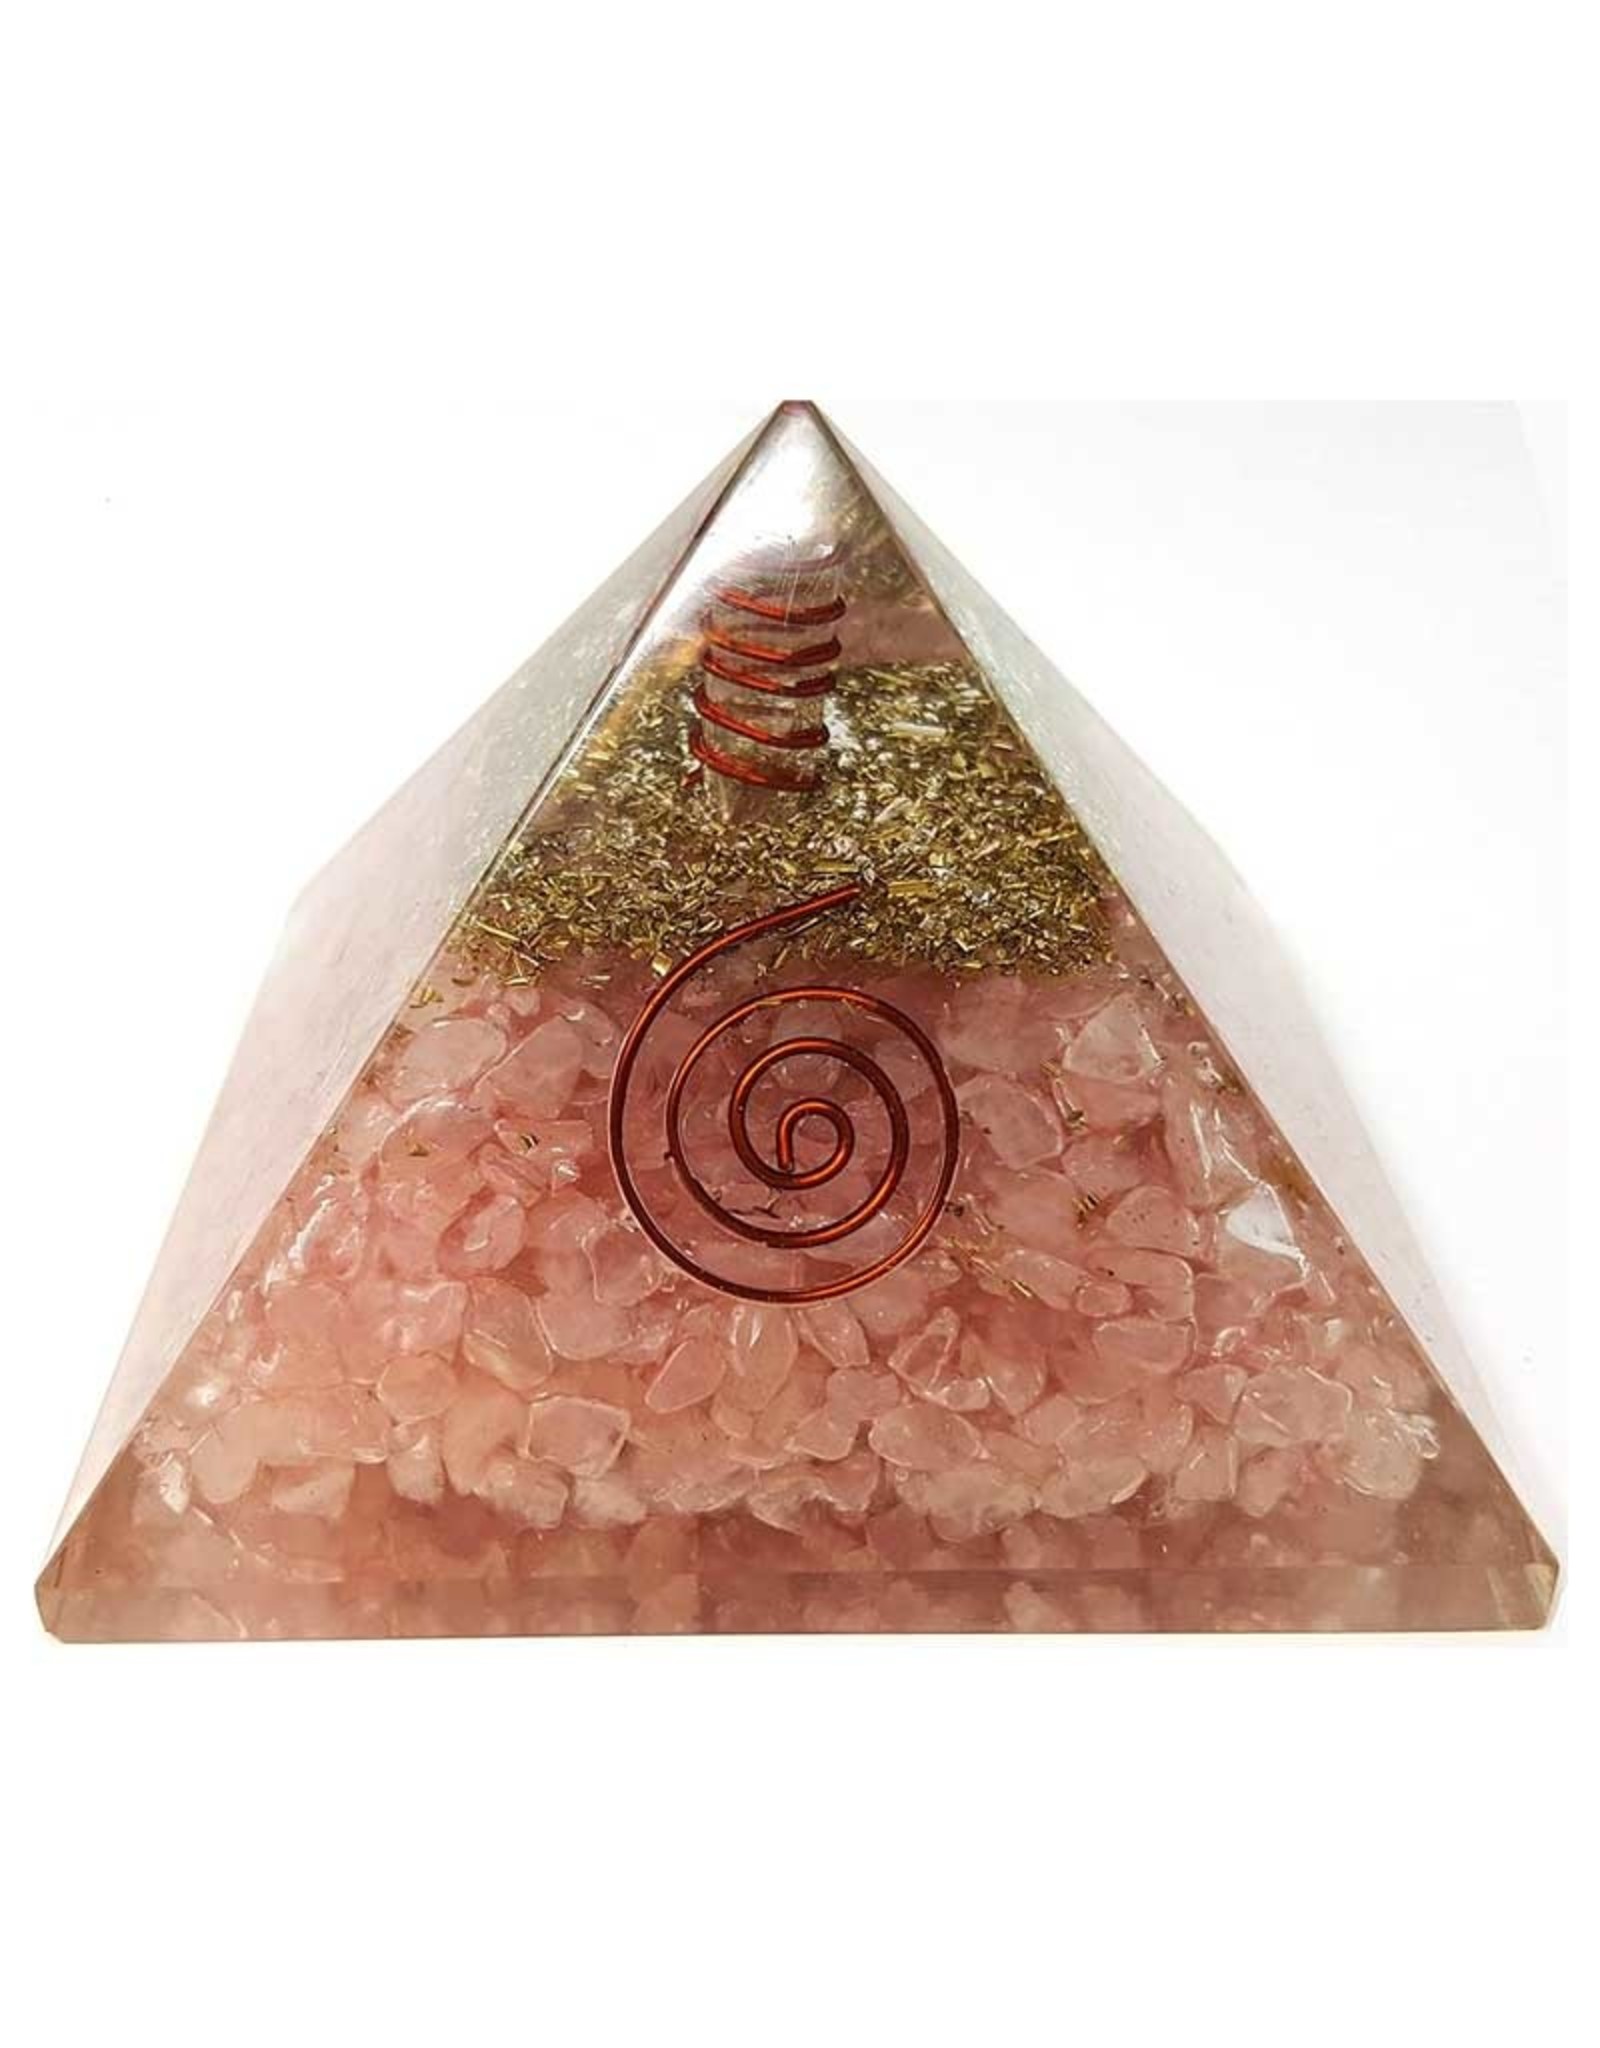 Rose Quartz Orgonite Pyramid with Copper - Large